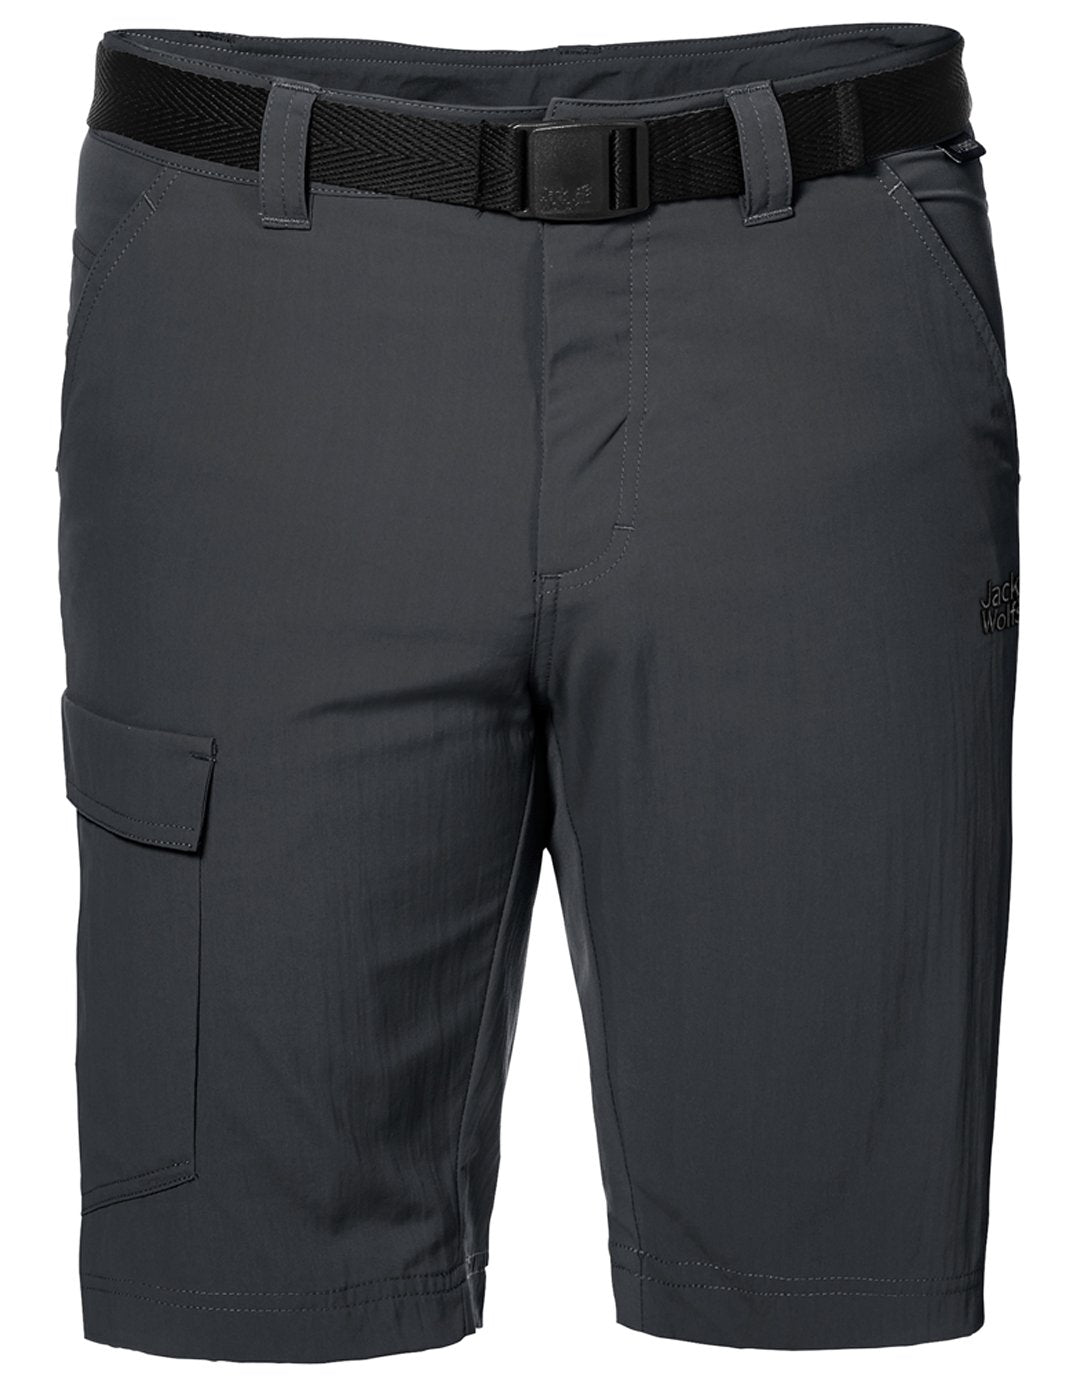 Mens Hoggar Shorts - Phantom - UK Size 34 Grey